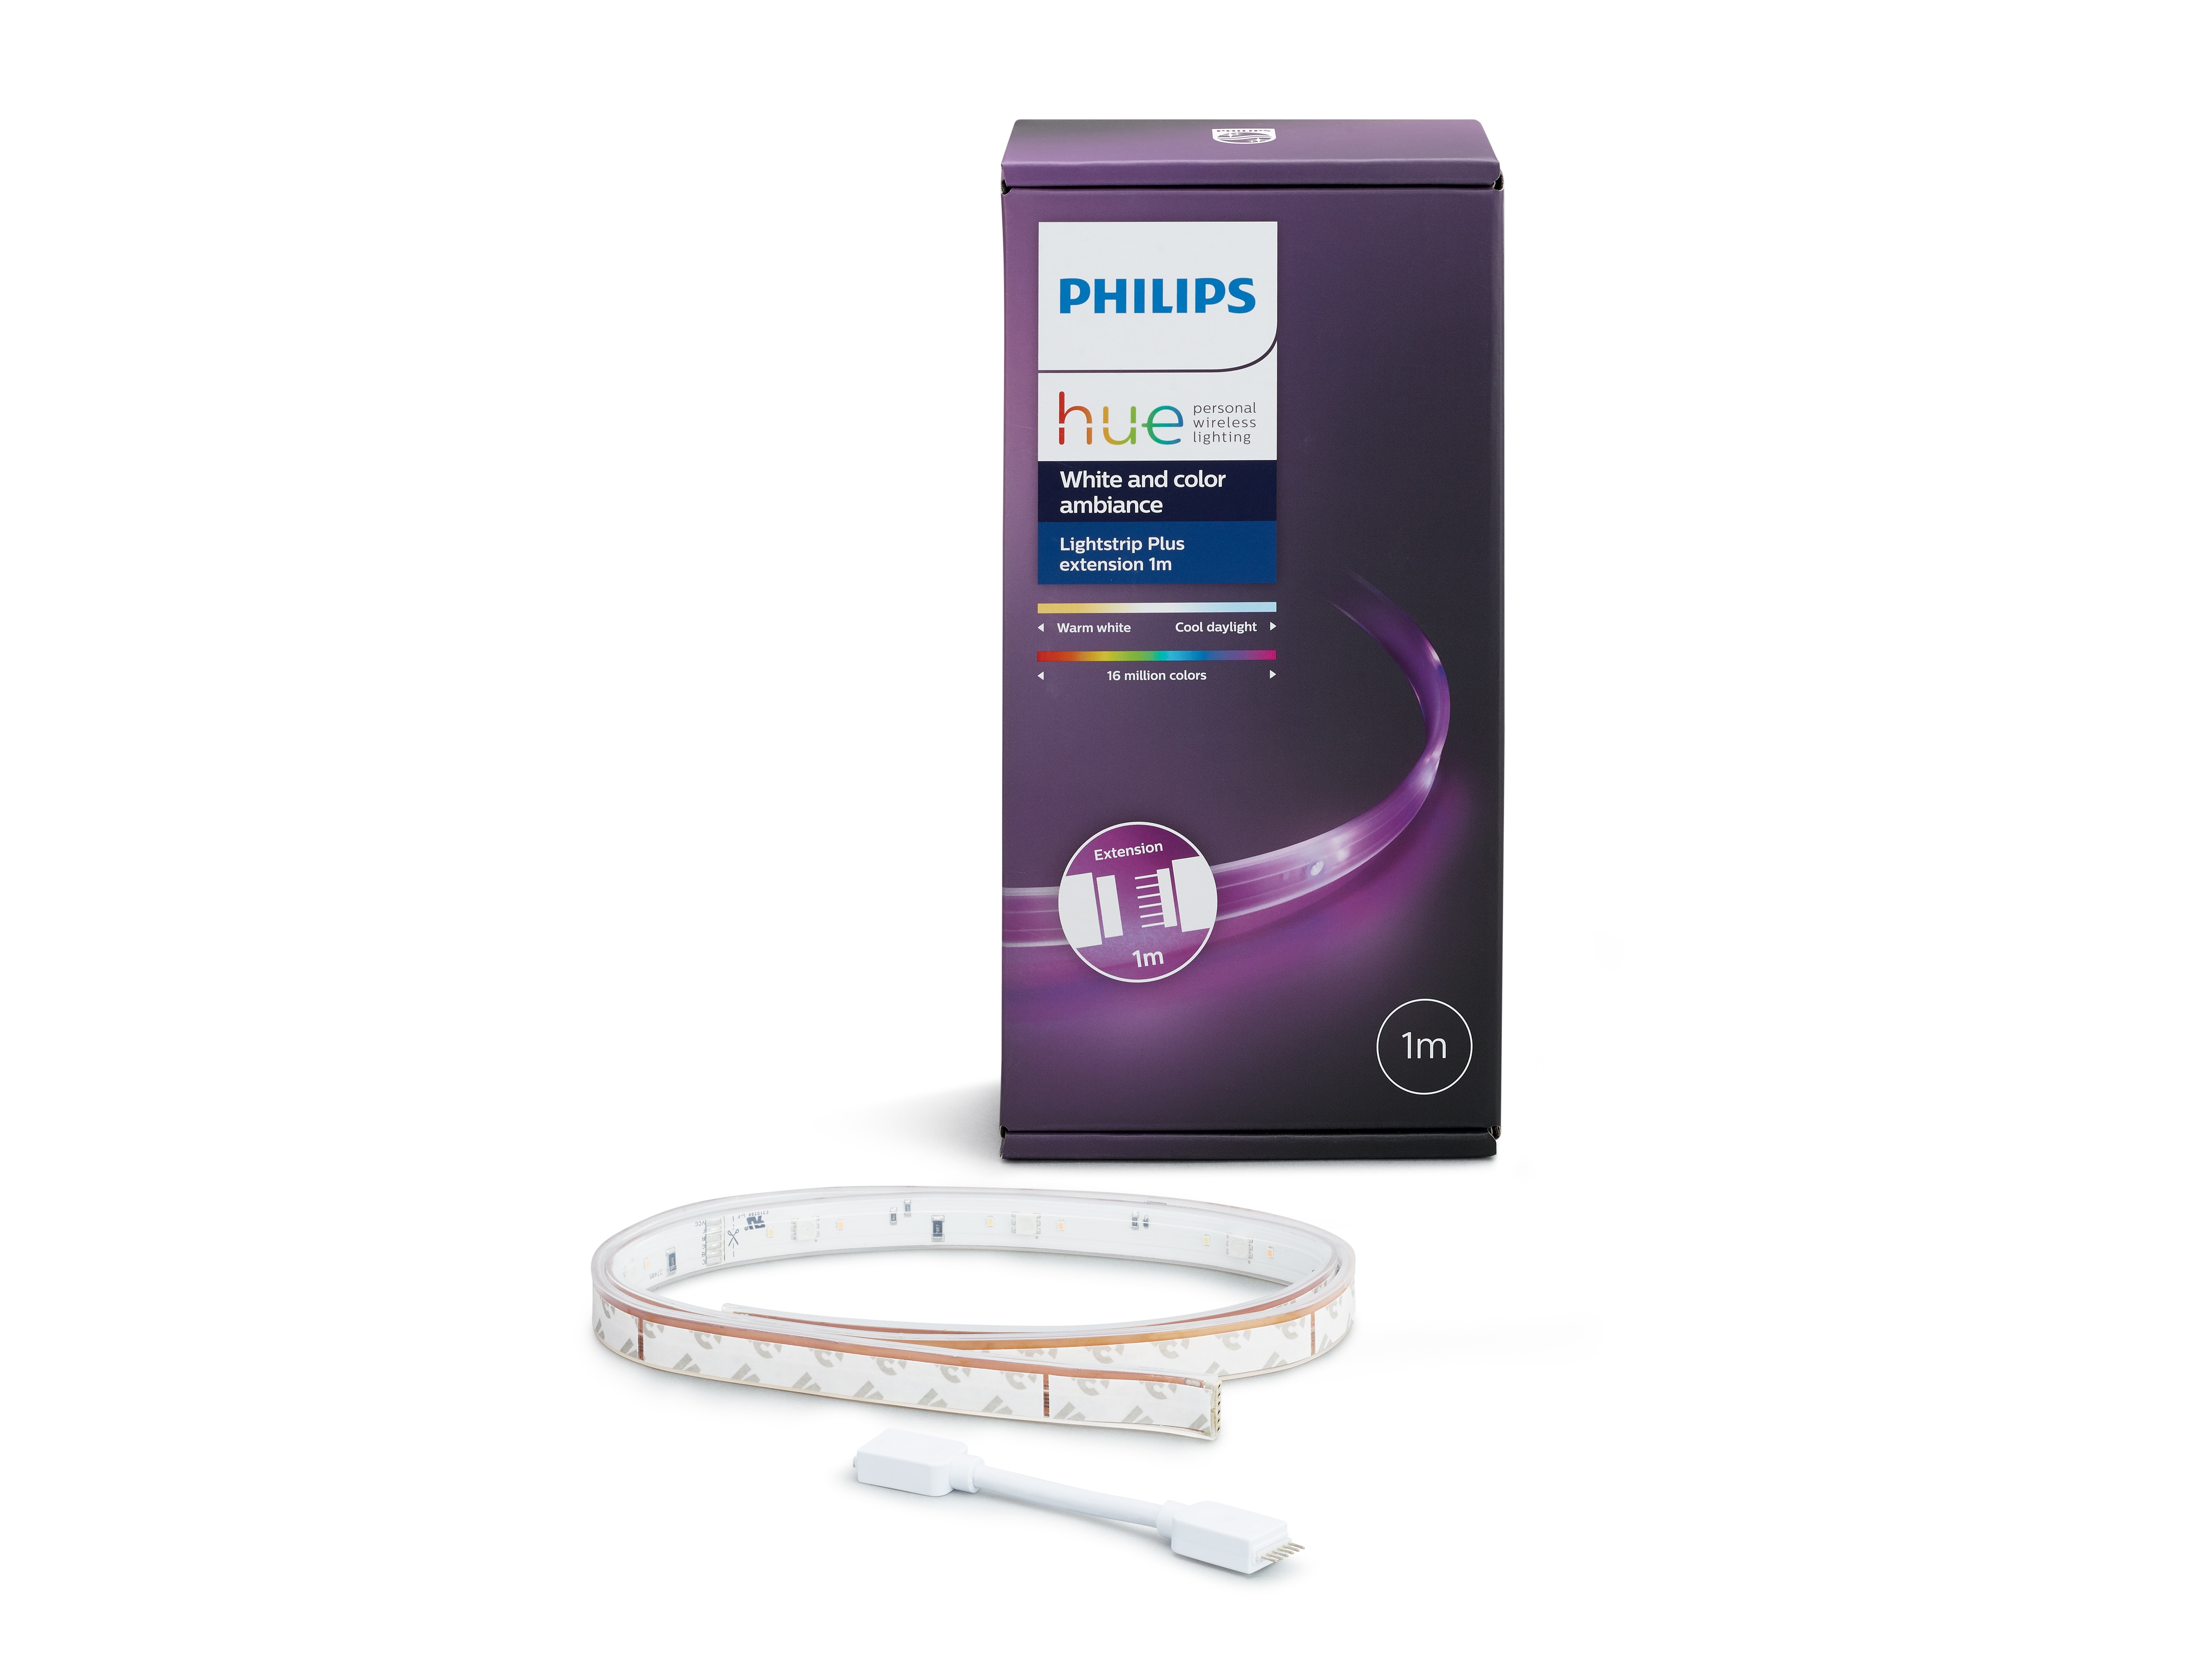 Signify annuncia un importante aggiornamento della famiglia Philips Hue  introducendo nuove lampadine e lampade e dispositivi bluetooth